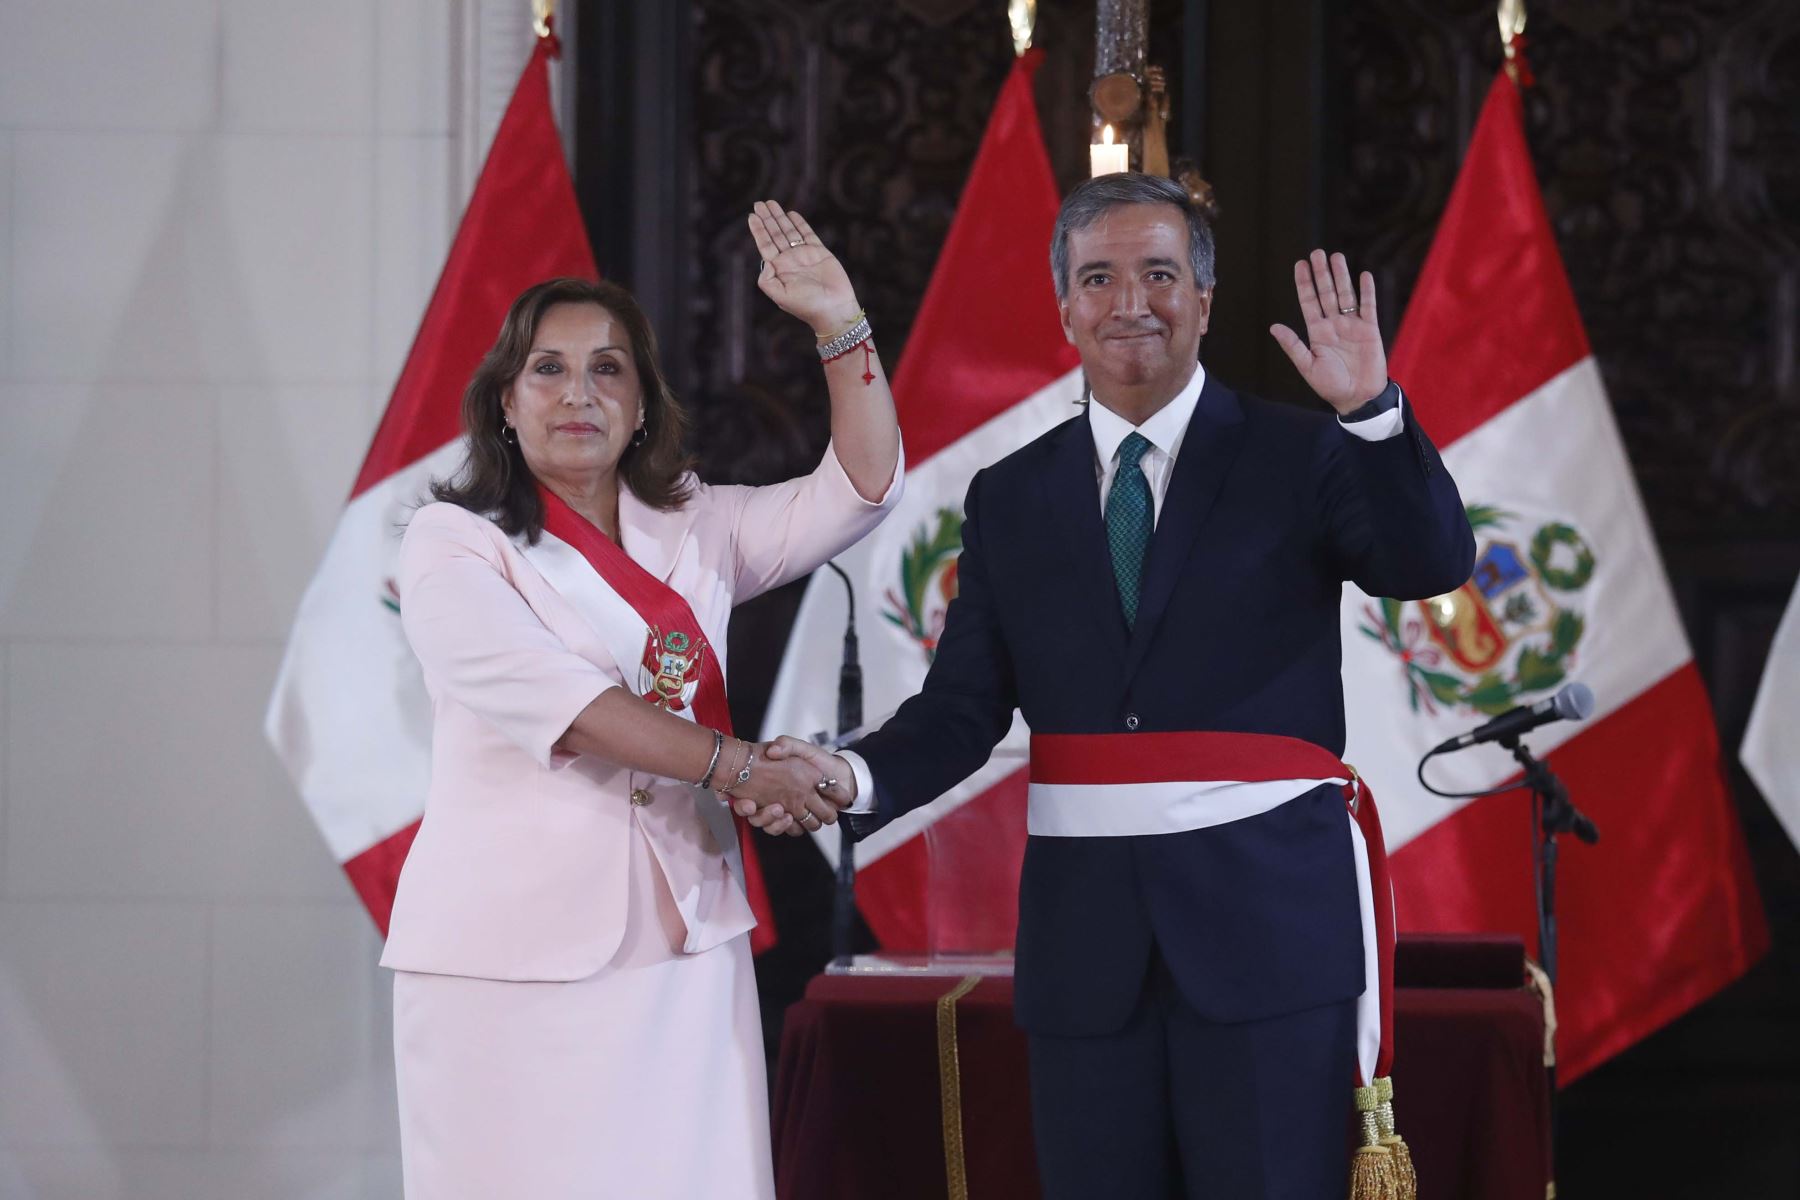 Presidenta de la República, Dina Boluarte, tomó juramento al nuevo titular del Ministerio de la Producción, Raúl Pérez Reyes, en el Palacio de Gobierno.

Foto: ANDINA/Presidencia Perú